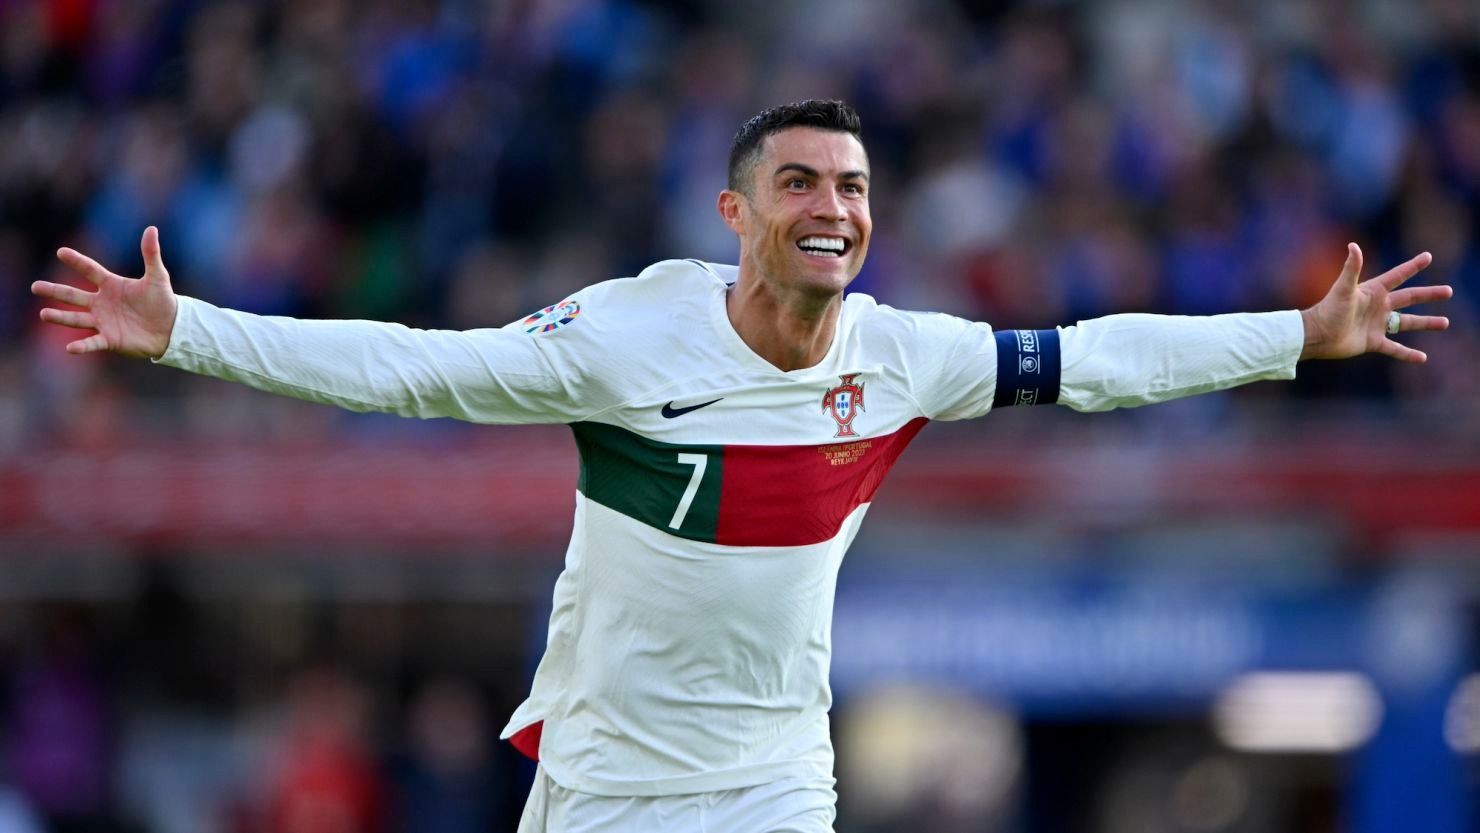 Chishkala: Portugal Loves Ronaldo, But He's Not Always In The Spotlight